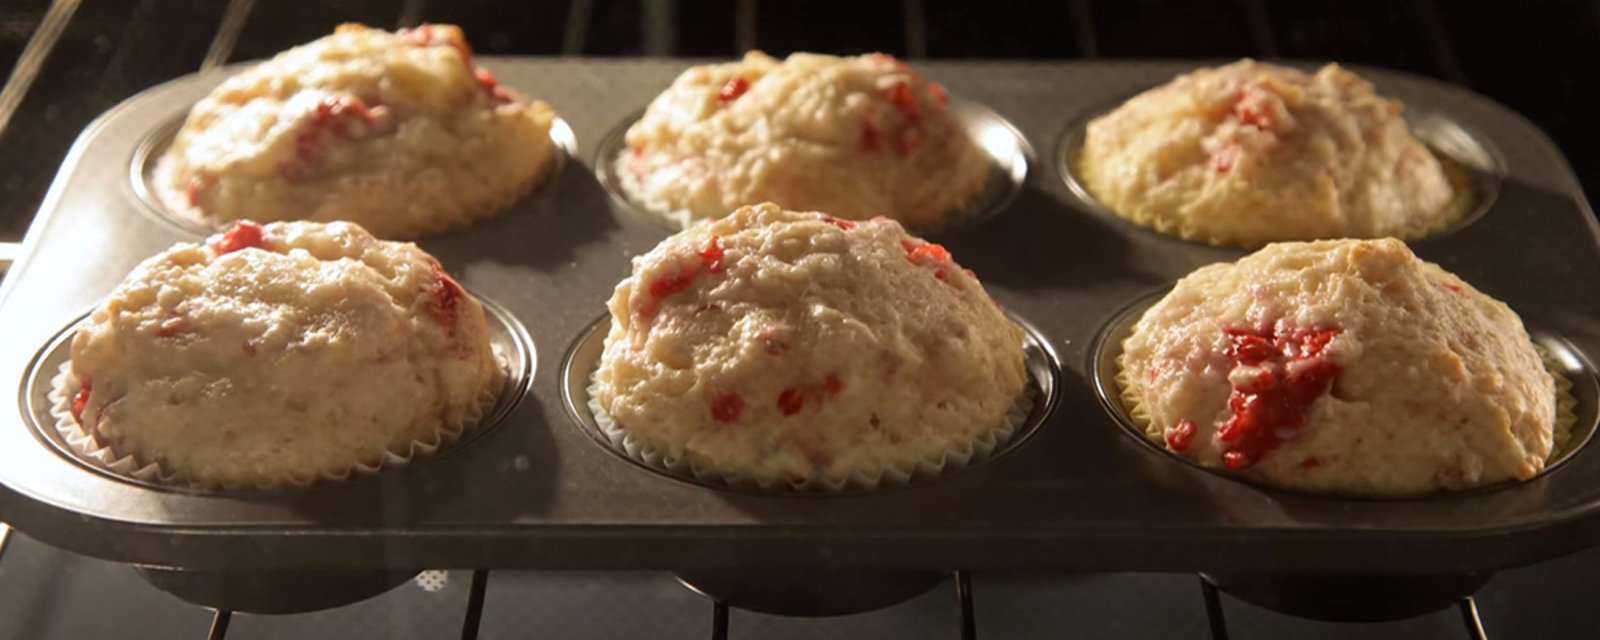 Plus de secrets pour les savoureux muffins «explosion de fruits» de chez Tim!